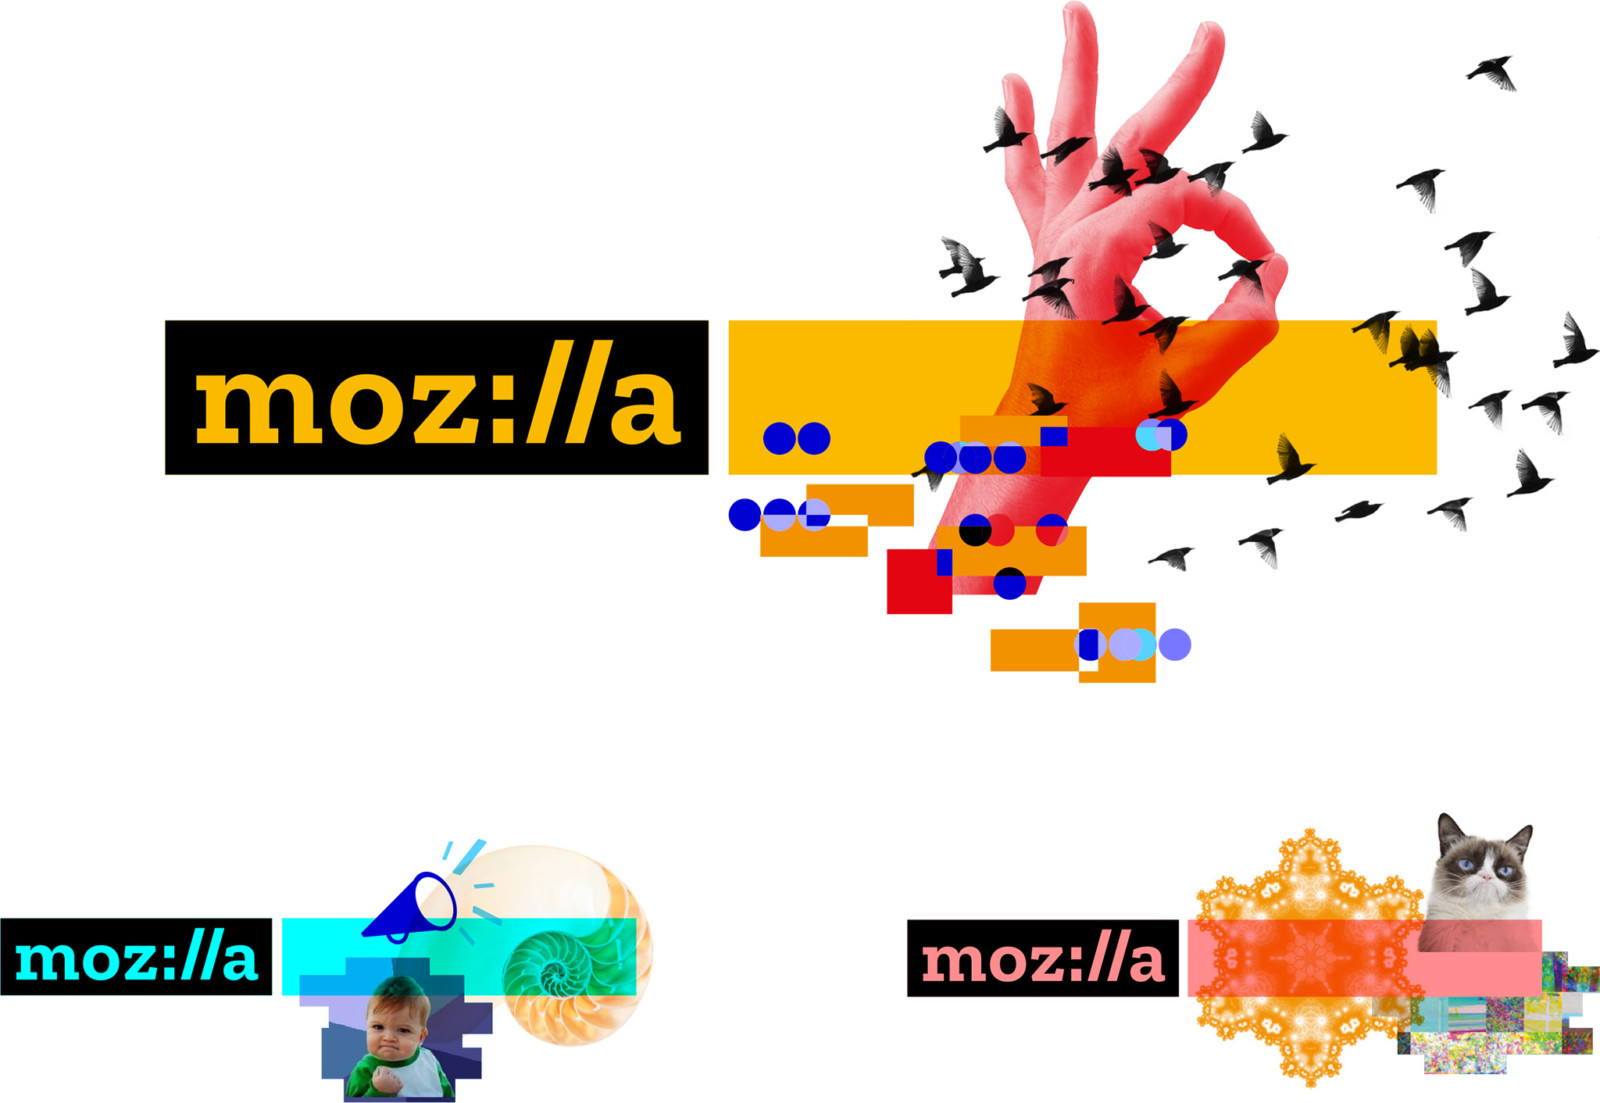 Mozilla Foundation image